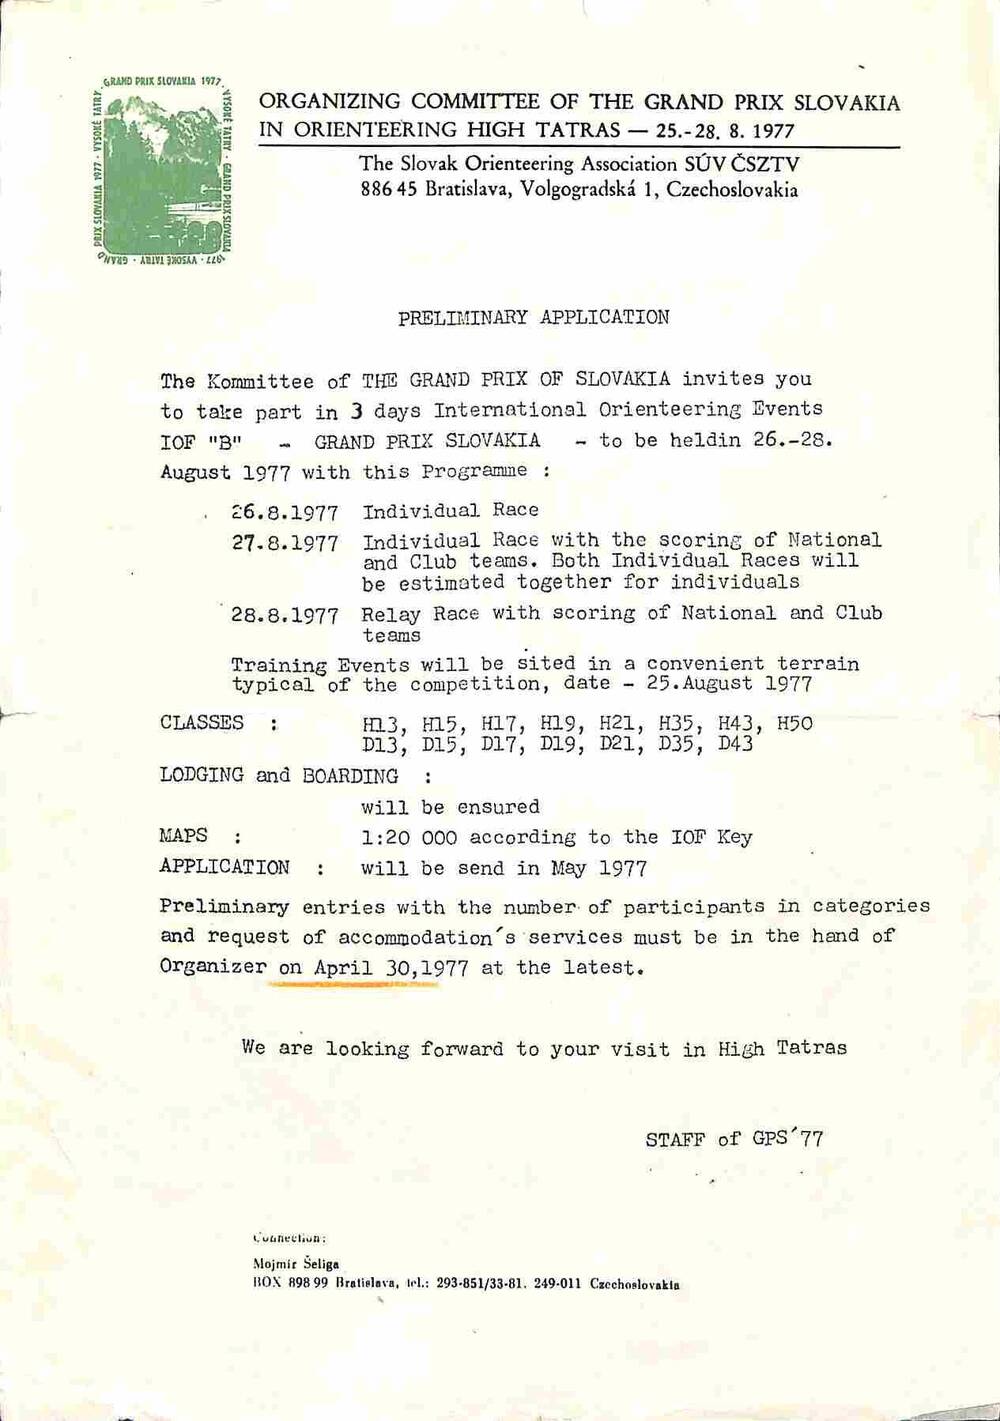 Письмо Бойцову В. из Чехословакии на английском языке с просьбой принять участие в соревнованиях по ориентированию в августе 1977 г. с программой соревнования